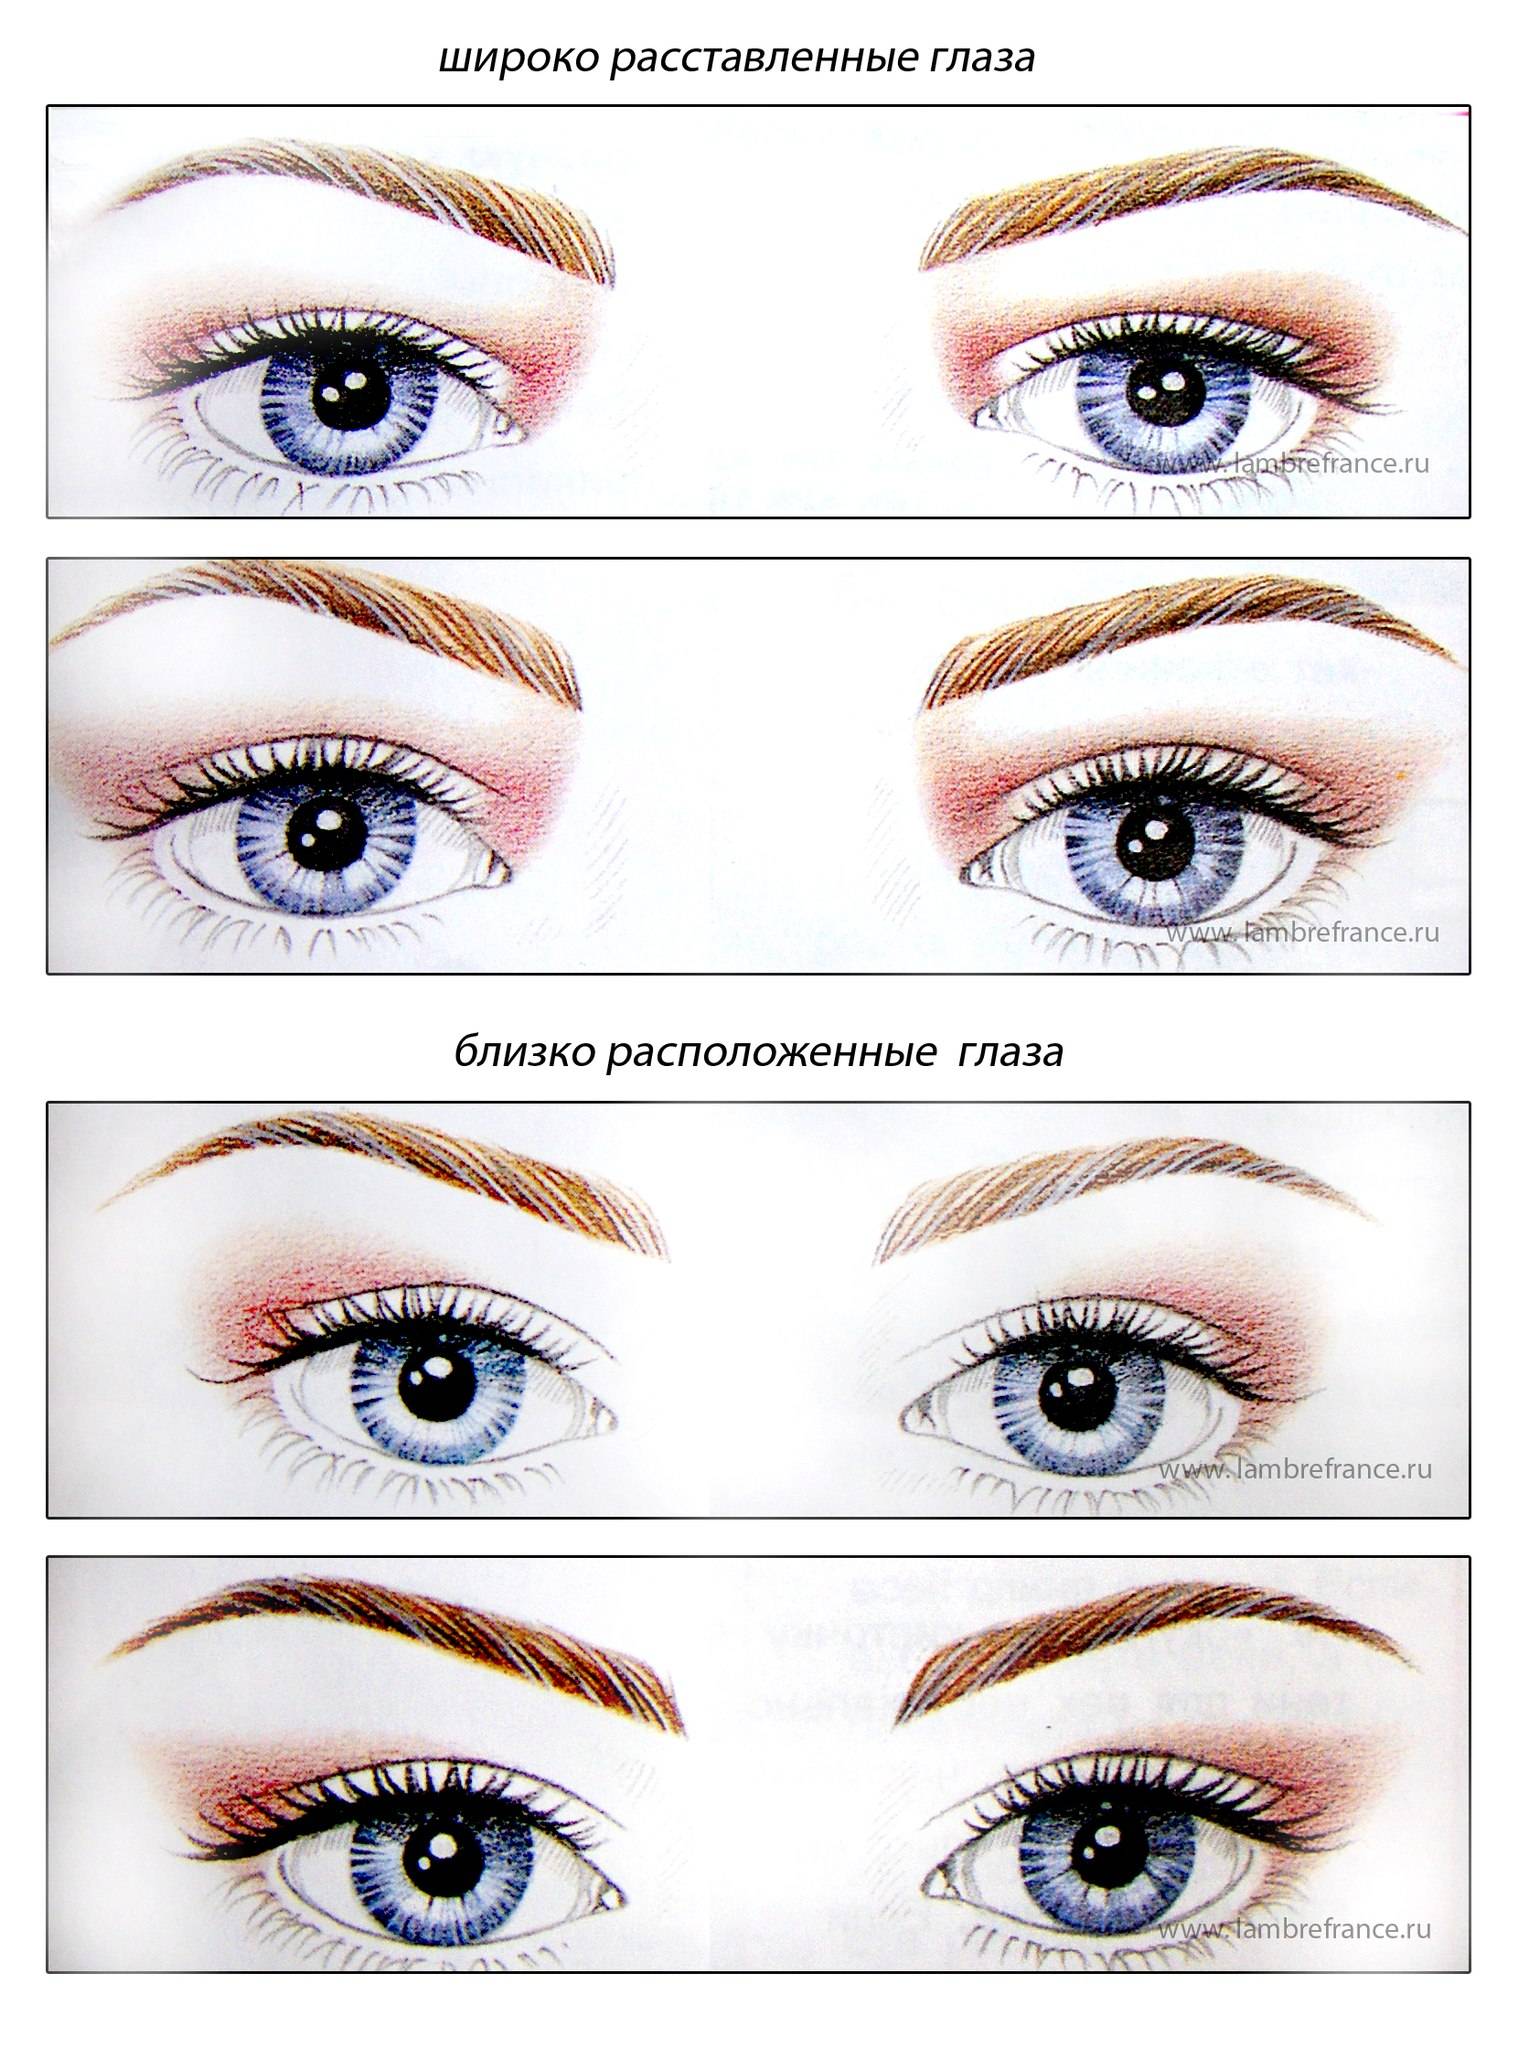 Виды век. Разновидности форм глаз. Типы расположения глаз. Схемы макияжа для разных типов глаз. Узкая форма глаз.